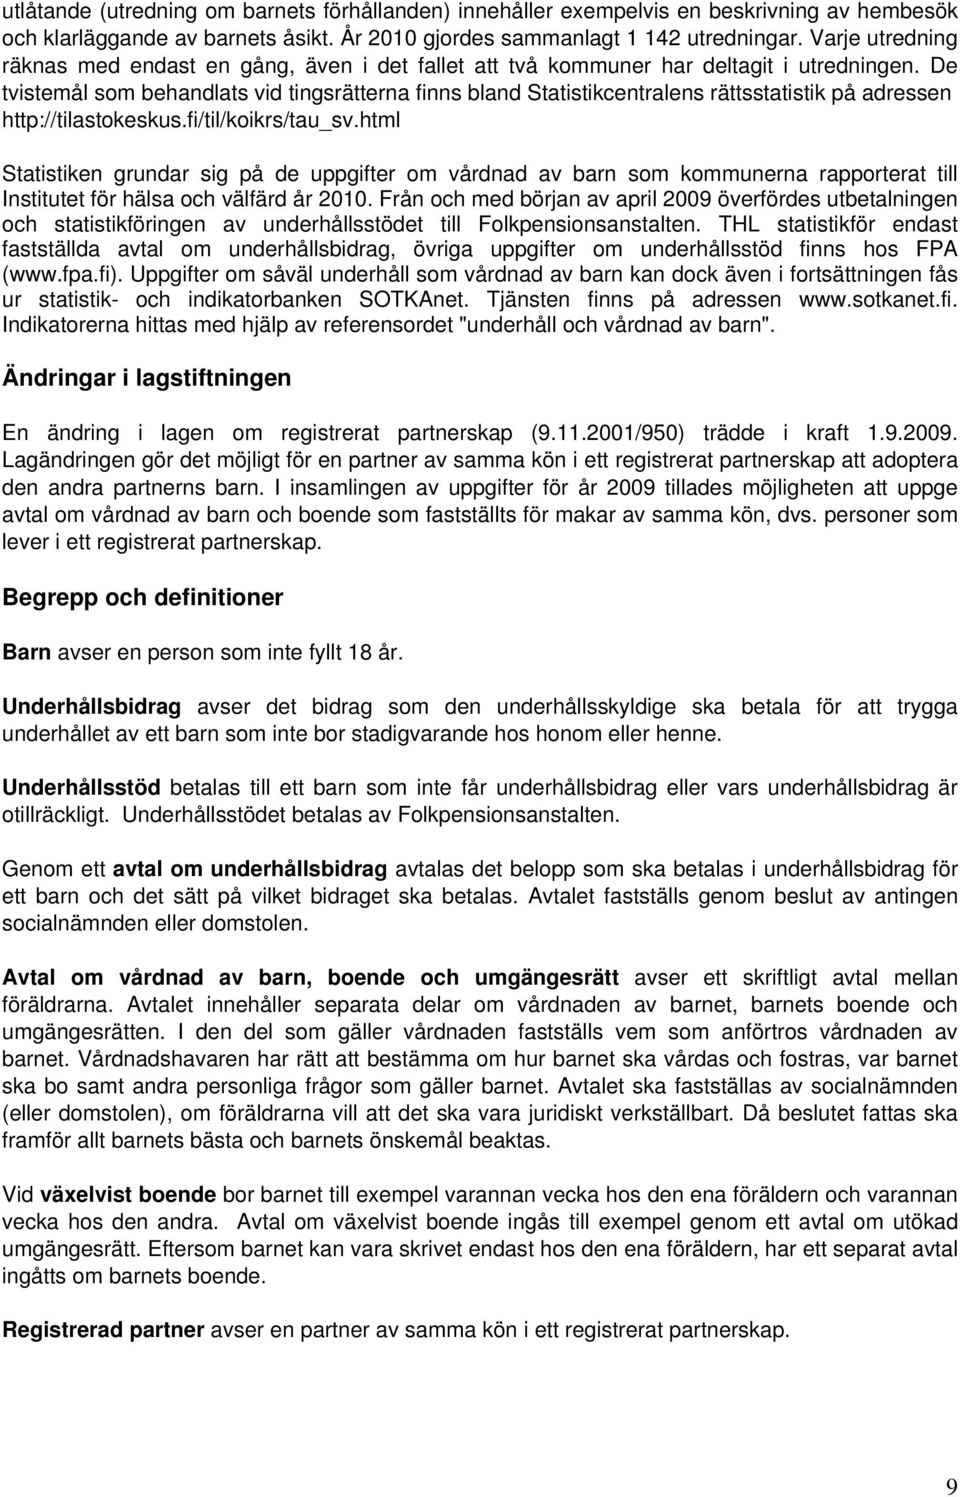 De tvistemål som behandlats vid tingsrätterna finns bland Statistikcentralens rättsstatistik på adressen http://tilastokeskus.fi/til/koikrs/tau_sv.